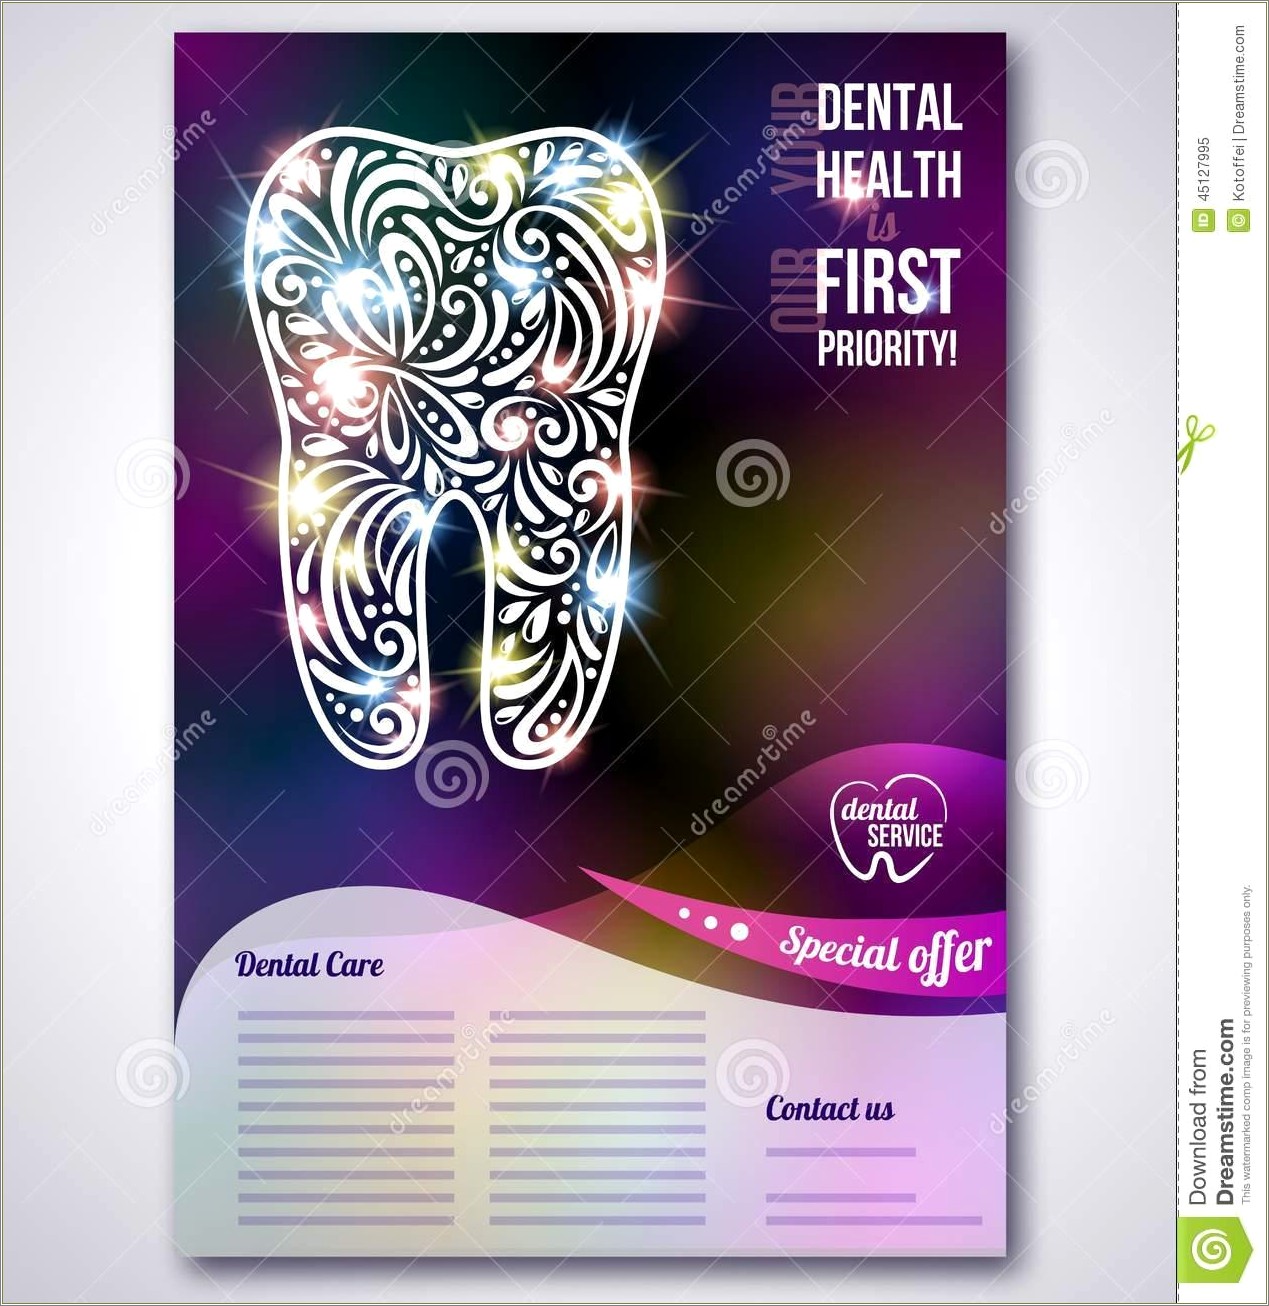 Dental Brochure Design Templates Free Download